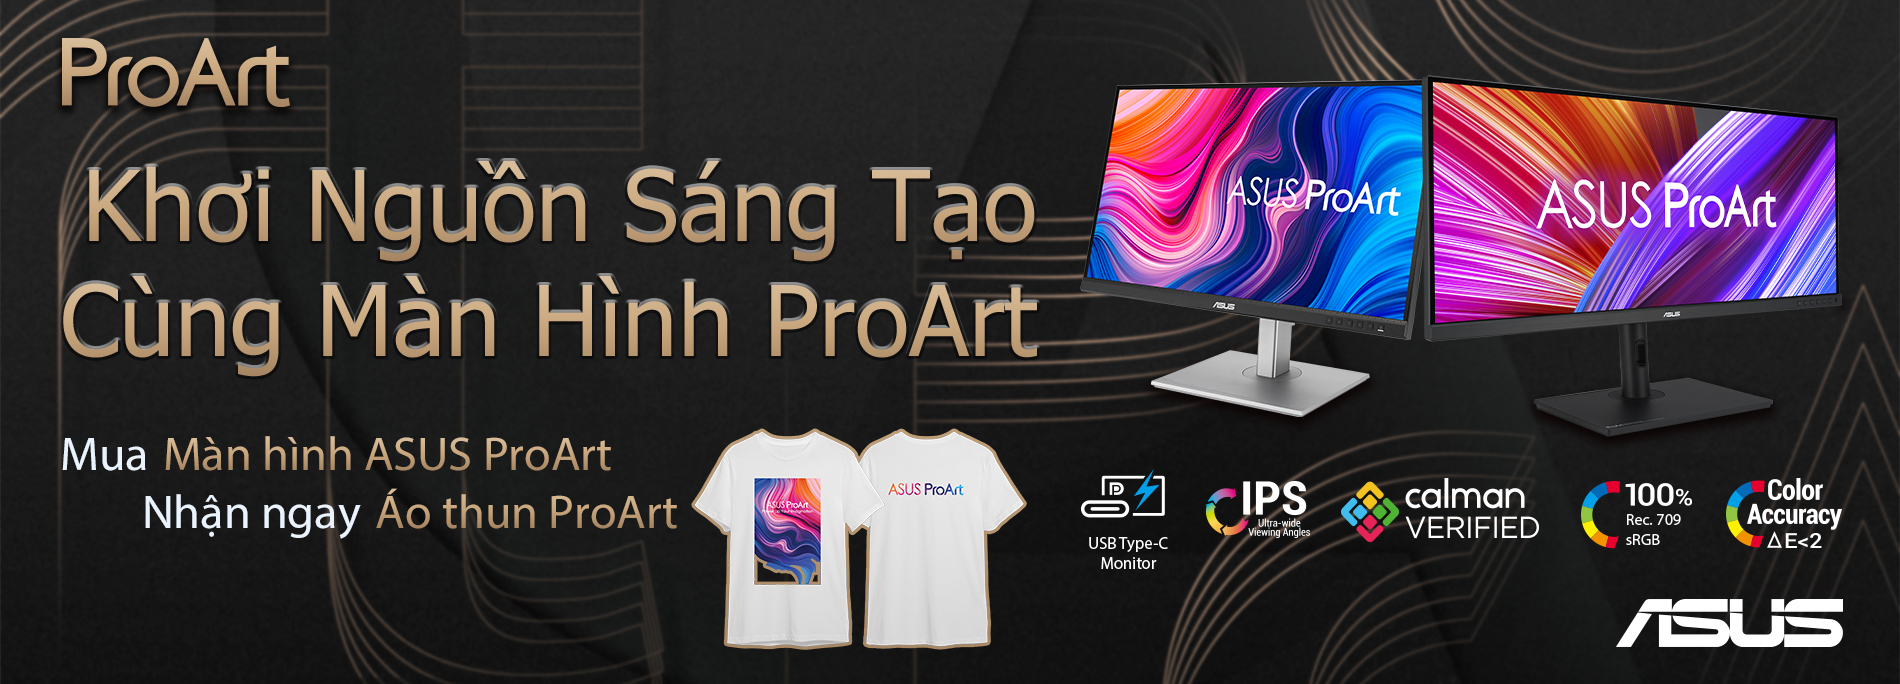 Khơi nguồn sáng tạo cùng màn hình ProArt - Nhận ngay áo thun ProArt khi mua màn hình ASUS dòng ProArt chuyên đồ họa